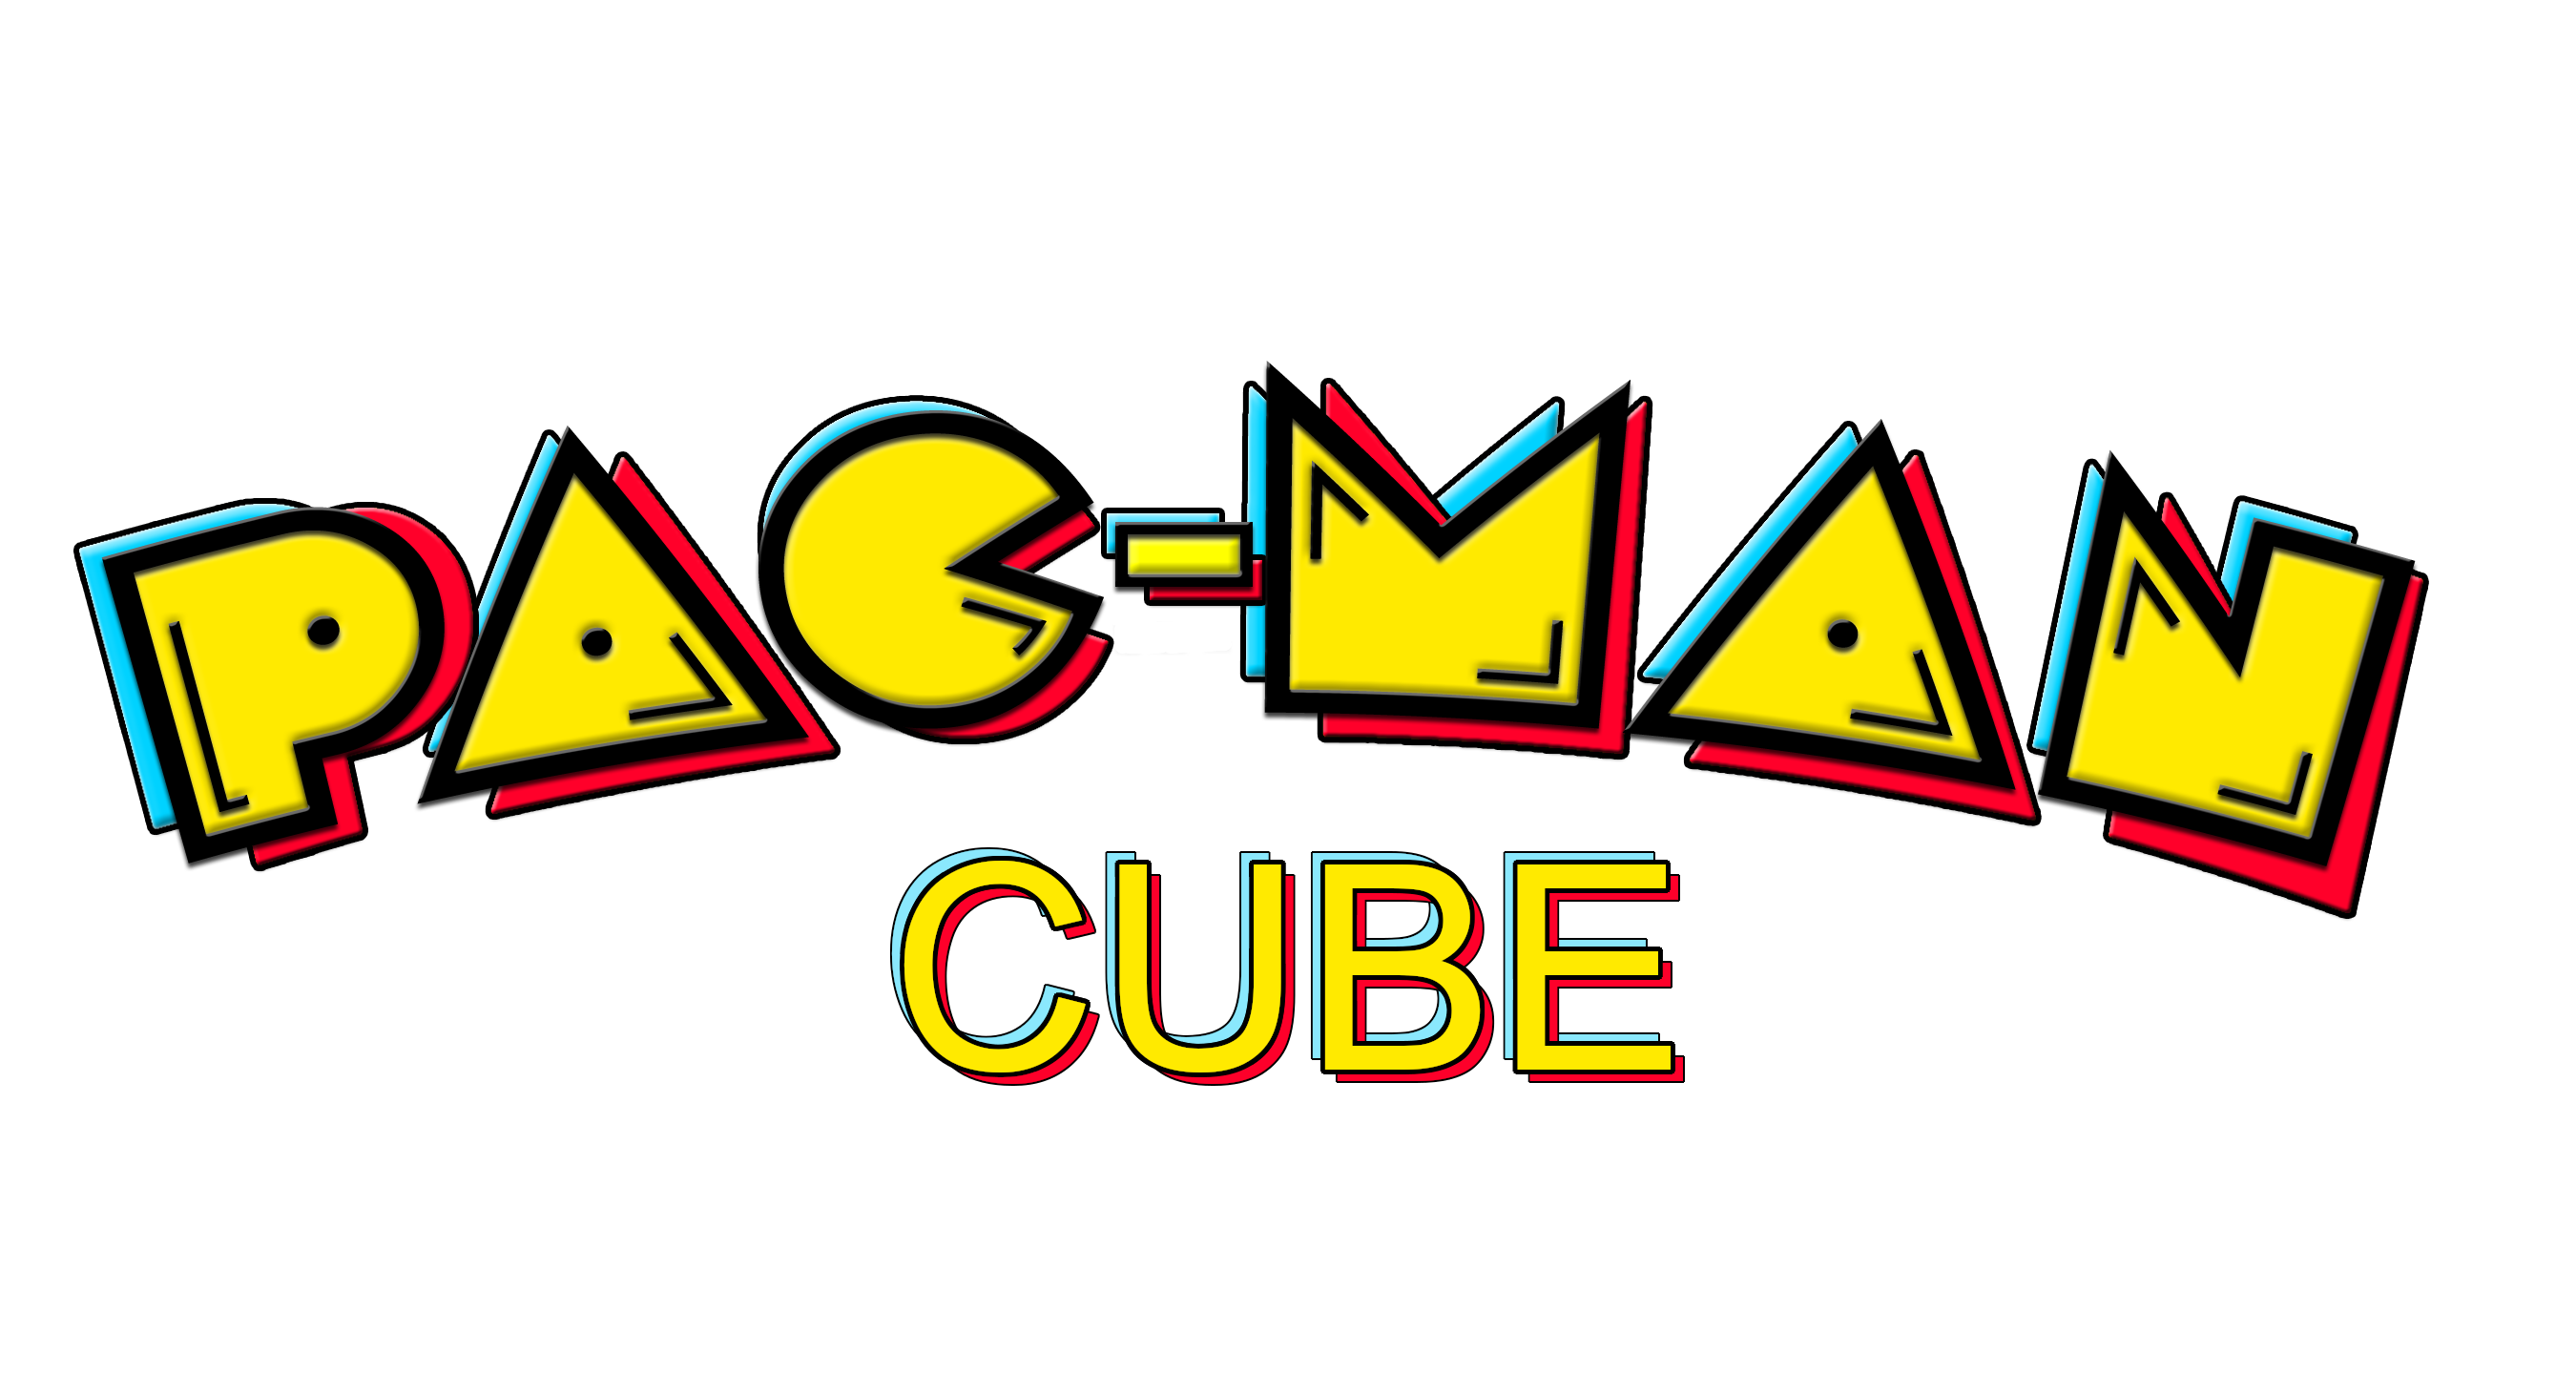 Pacman Cube